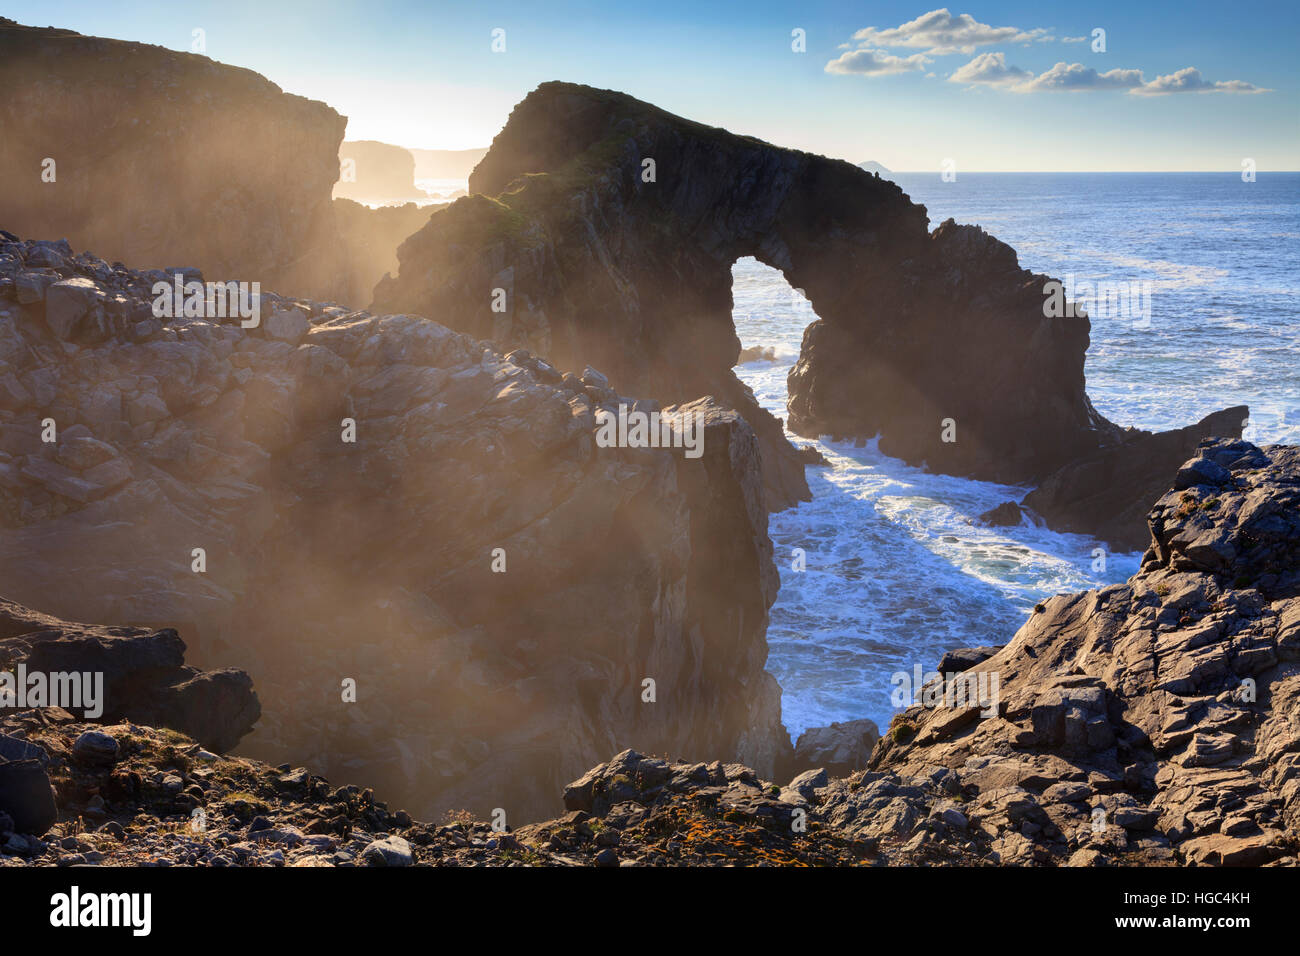 Stac' Phris arco natural de la isla de Lewis. Foto de stock